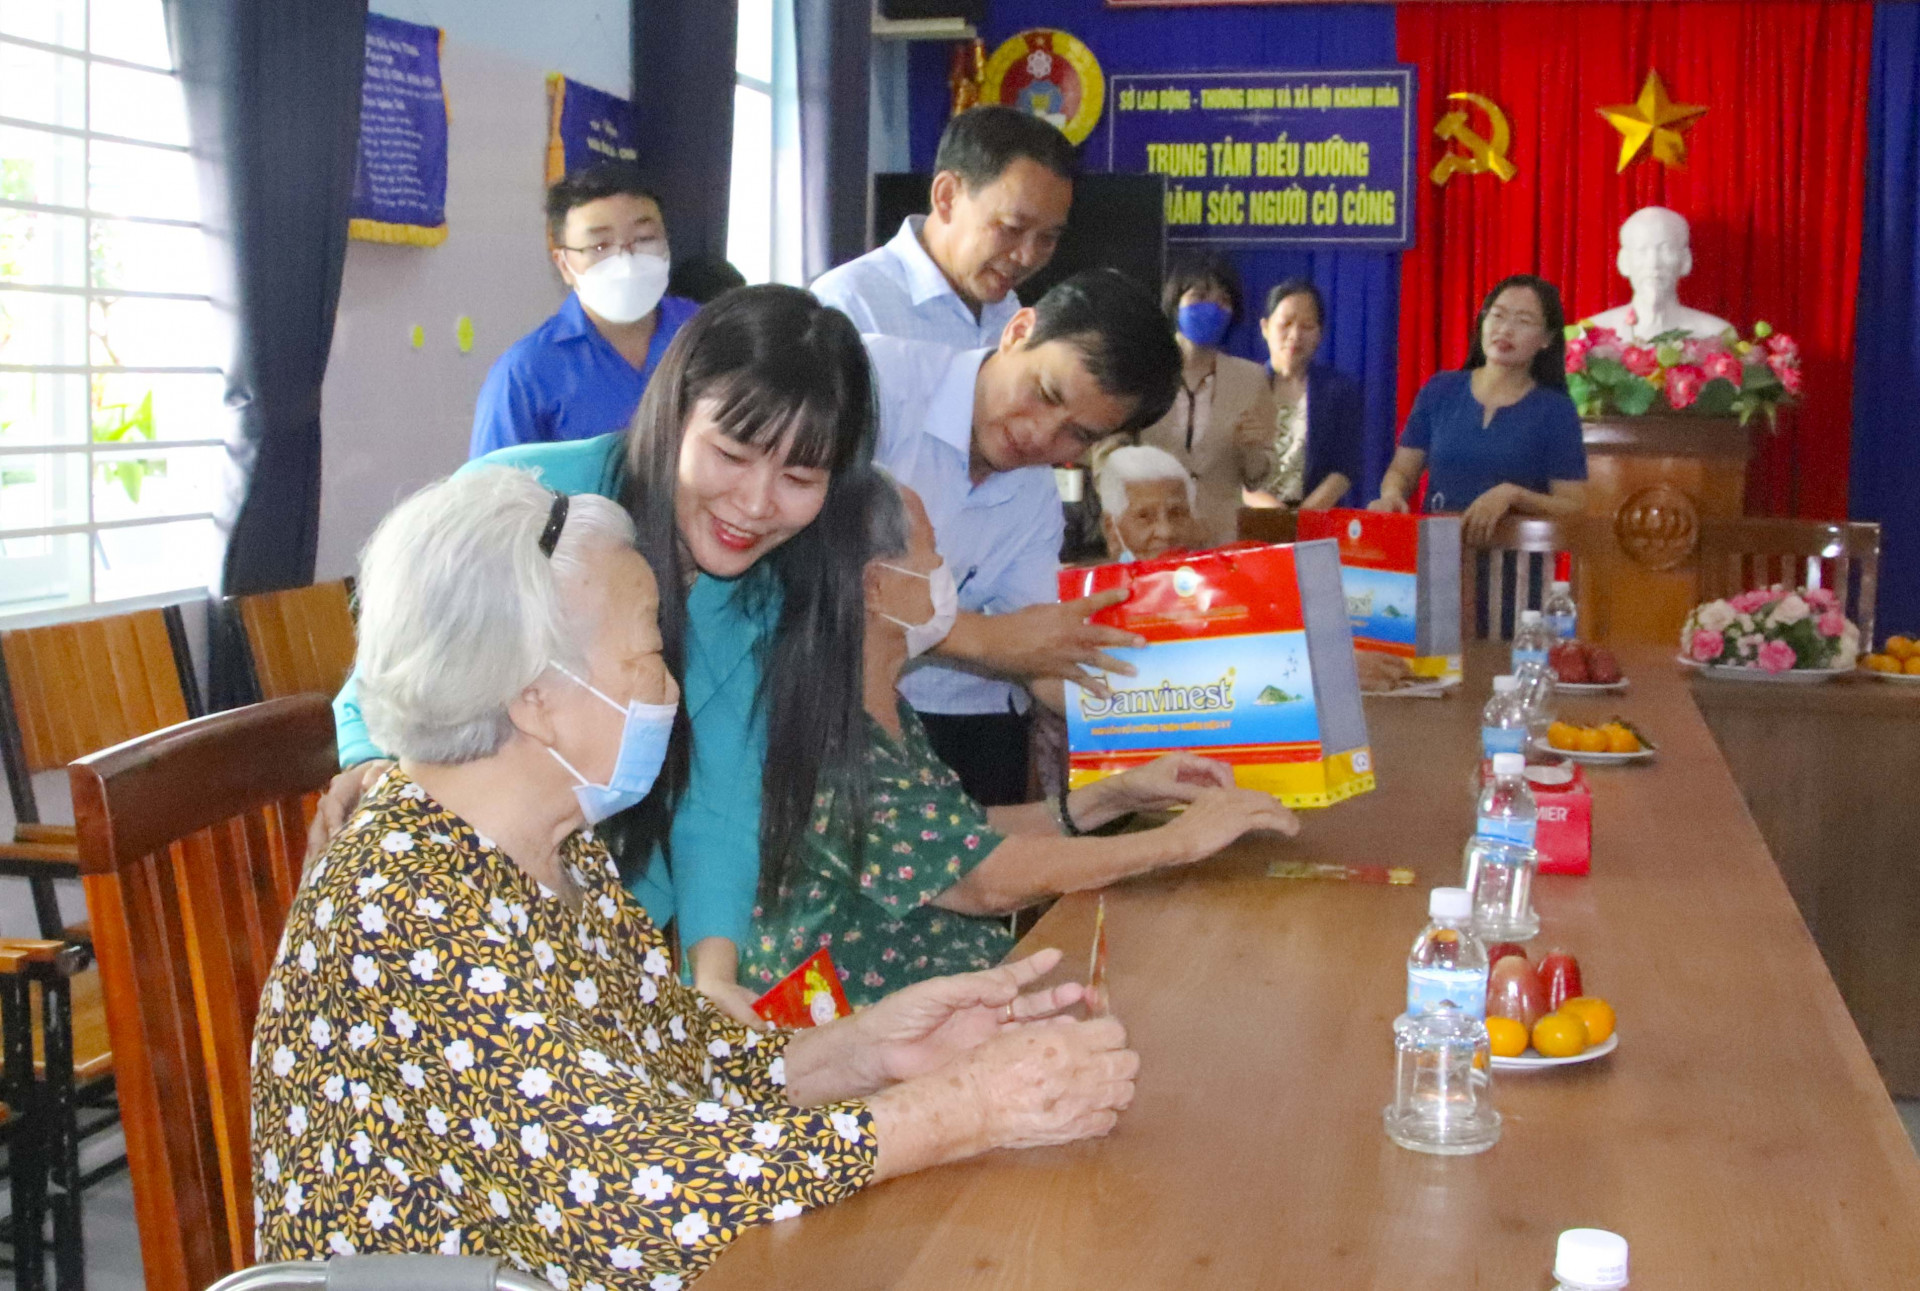 Lãnh đạo Công ty Yến Sào Khánh Hòa hỏi thăm sức khỏe và tặng quà cho các cụ.